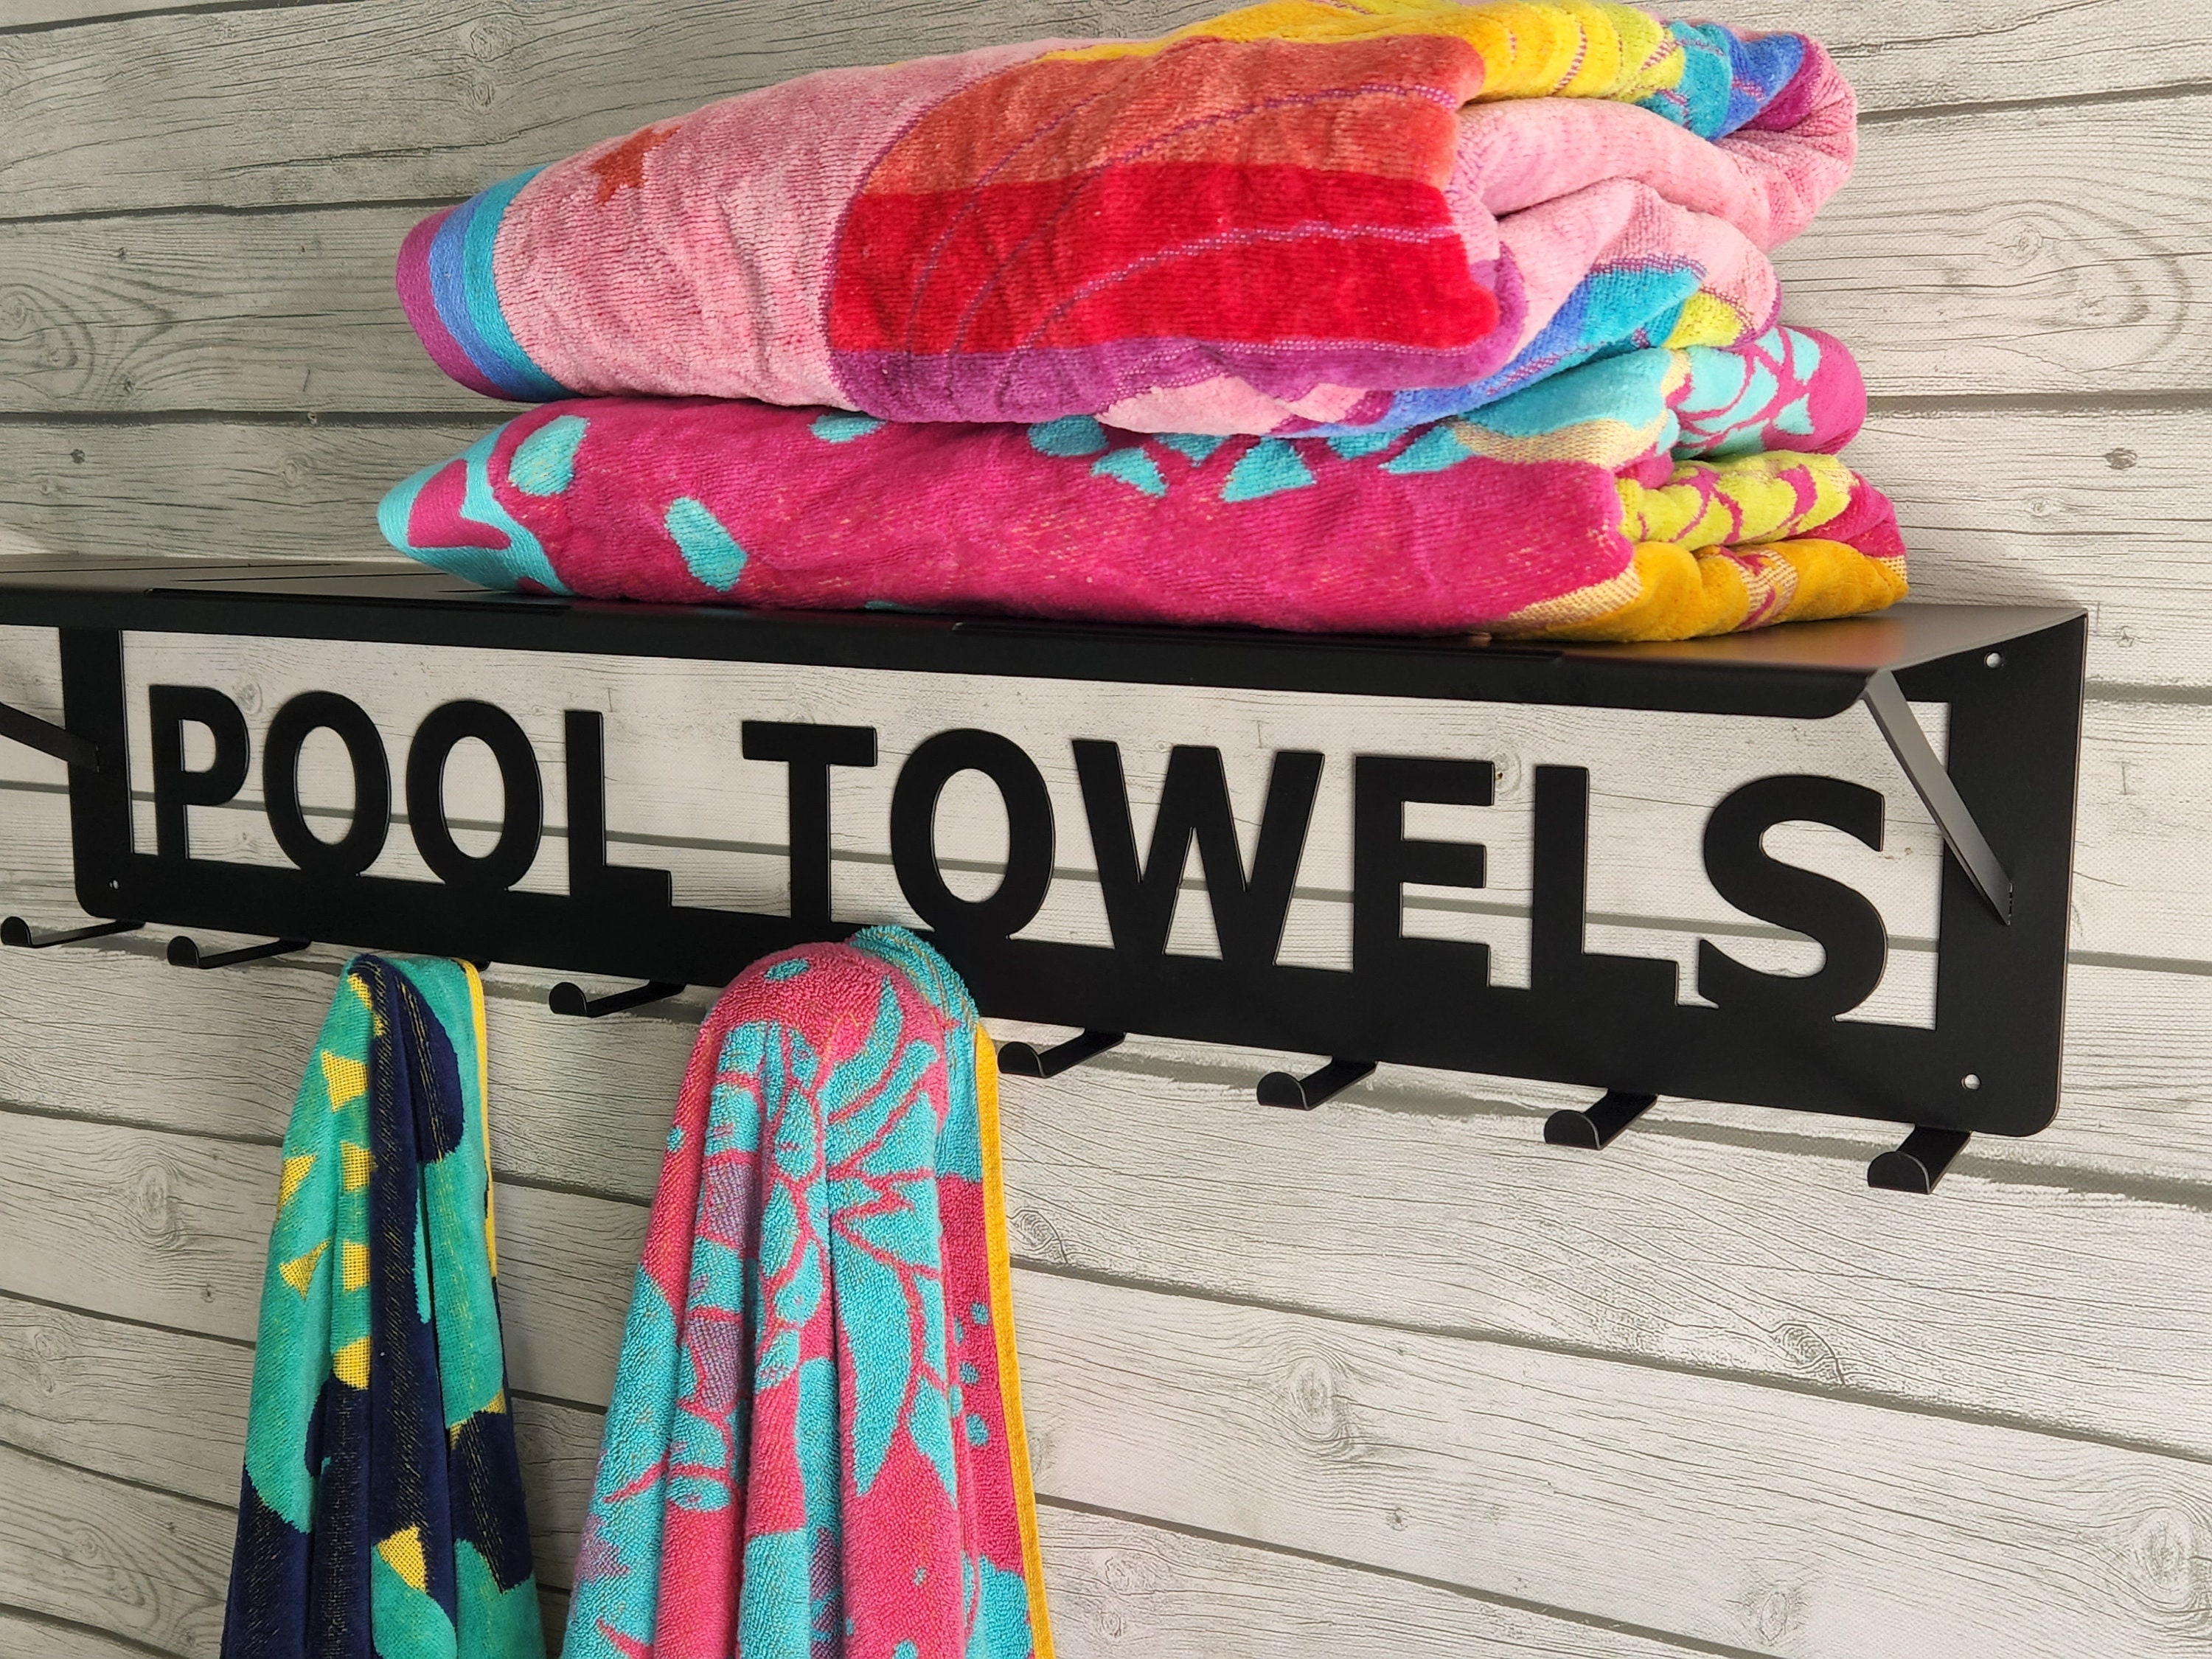 Hestiasko Pool Towel Rack Outdoor, 57 Outdoor Towel Rack for Hot Tub with  3 Adjustable Bars, Indoor & Outdoor Freestanding Aluminum Pool Towel Holder  for Towels, Bath Towels, Bathrobes - Bronze 